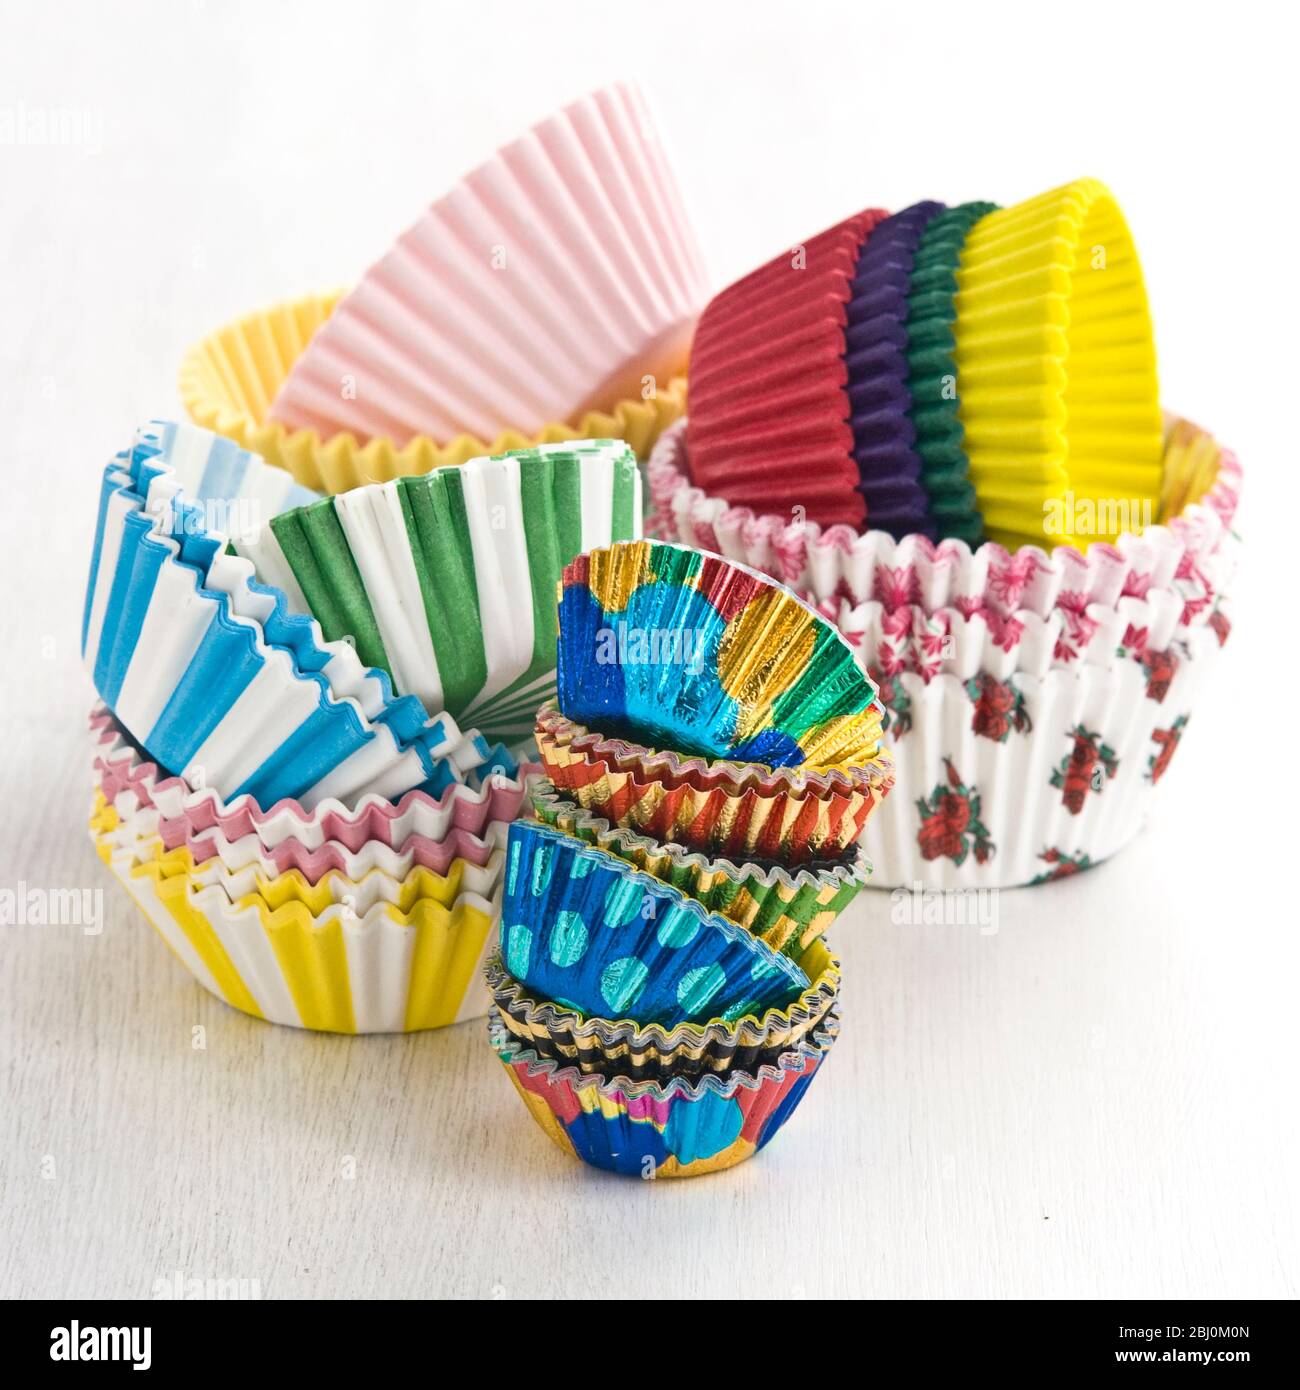 Stapel von dekorativen Papier- und Folienkuchen- und Muffin-Fällen - Stockfoto